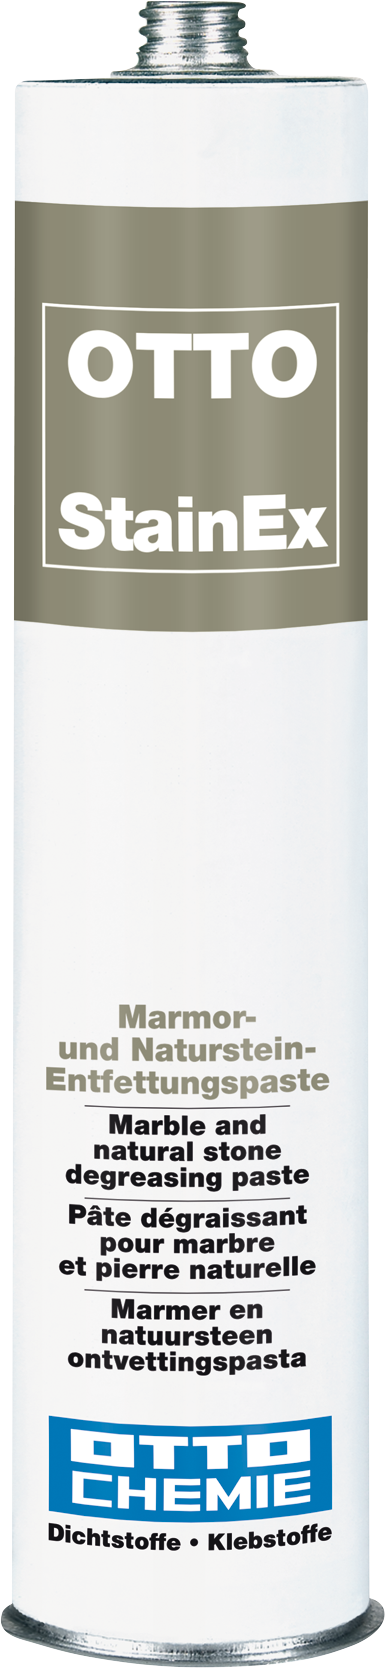 OTTO StainEx Die Marmor- und Naturstein-Entfettungspaste 310 ml